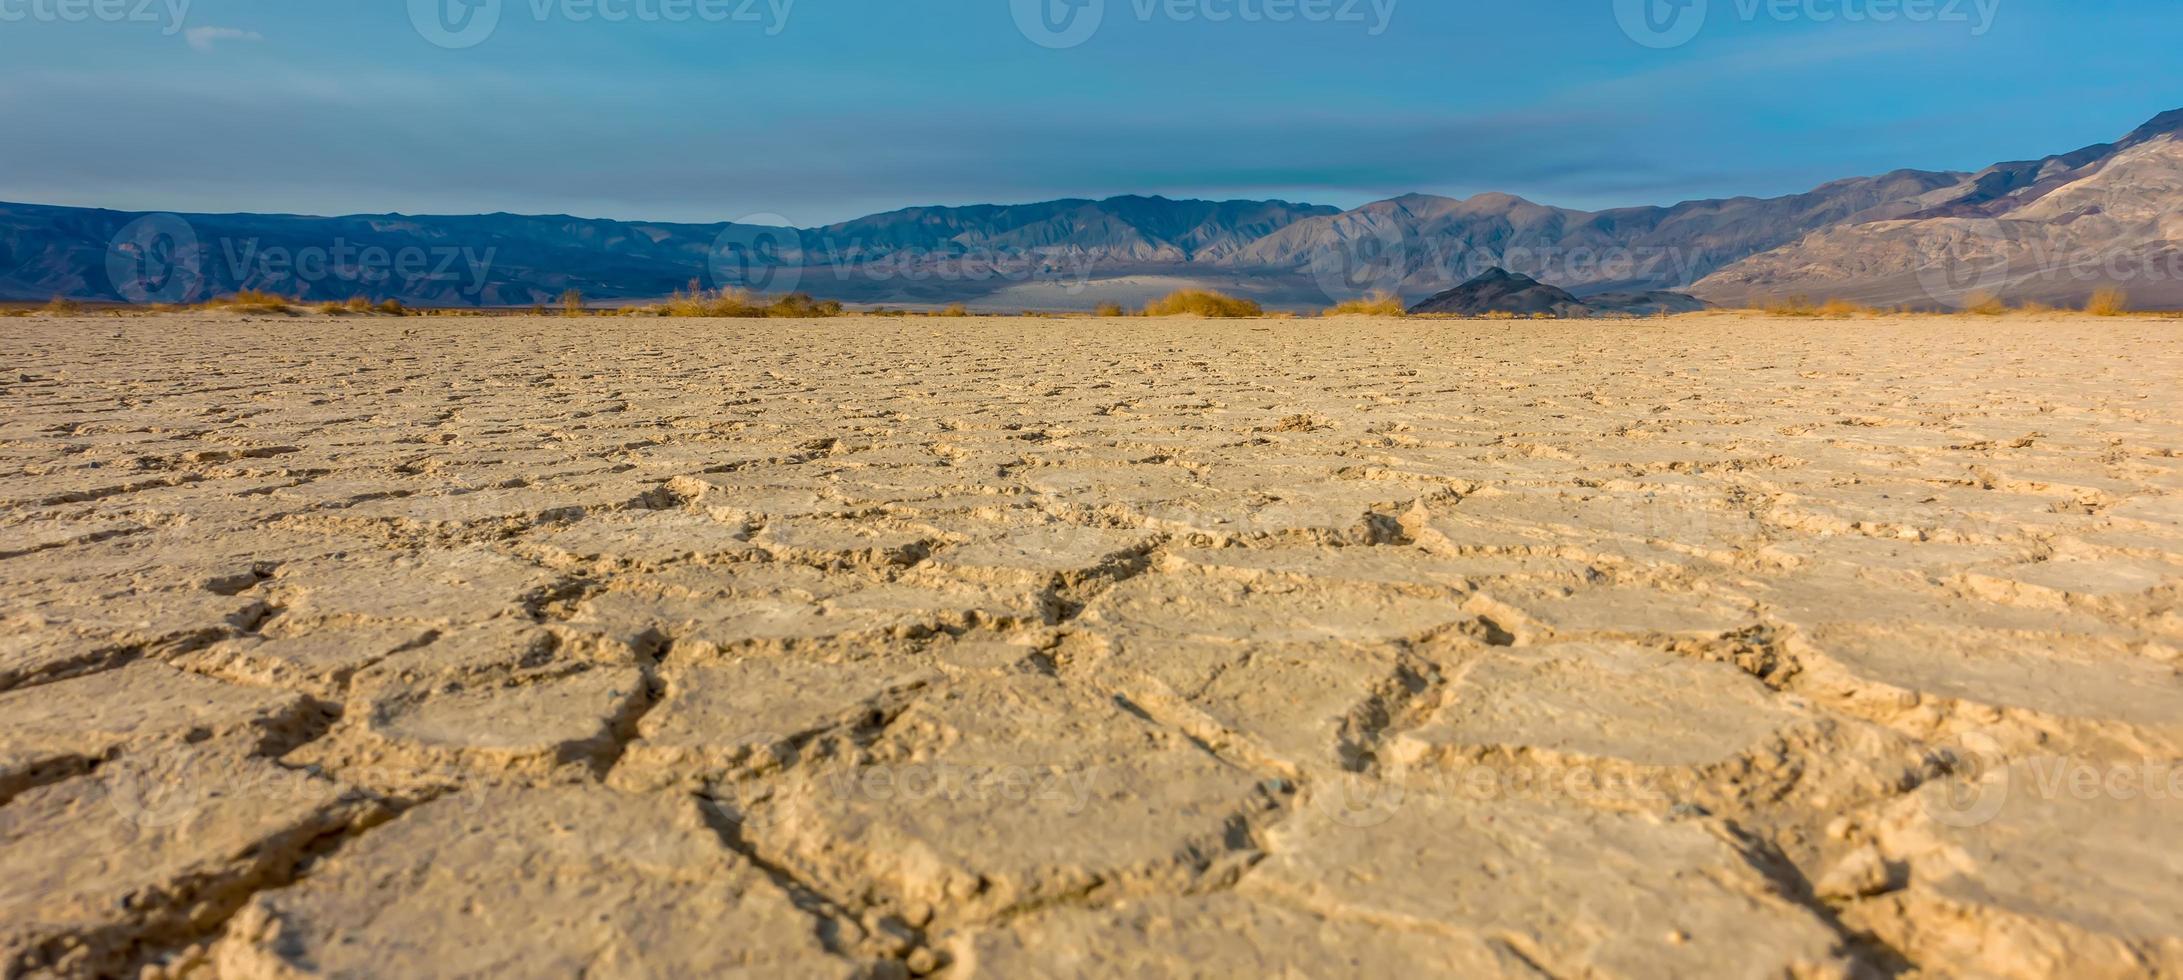 beau paysage dans le parc national de la vallée de la mort, californie photo